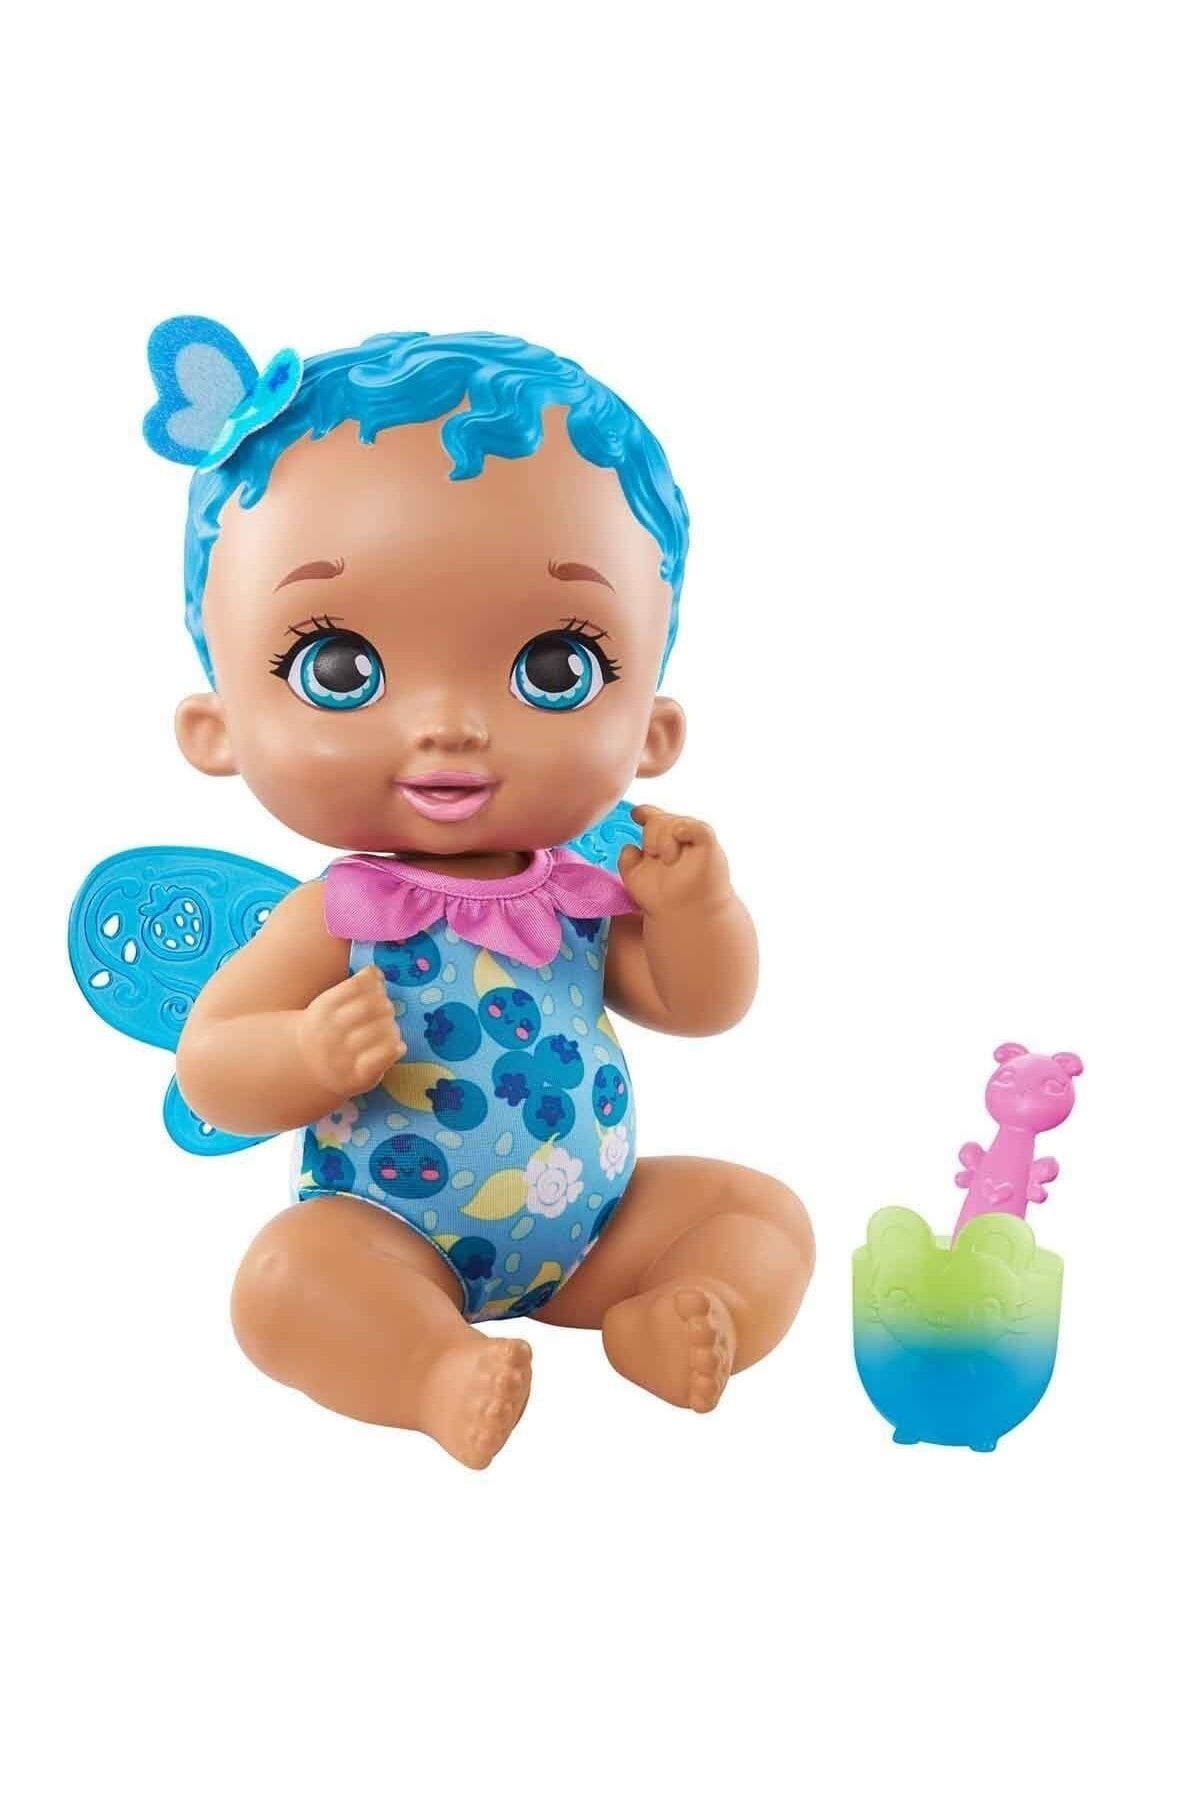 Mattel Gyp01 My Garden Baby, Kelebek Bebeğimin Yemek Zamanı, Mavi Saçlı Bebek